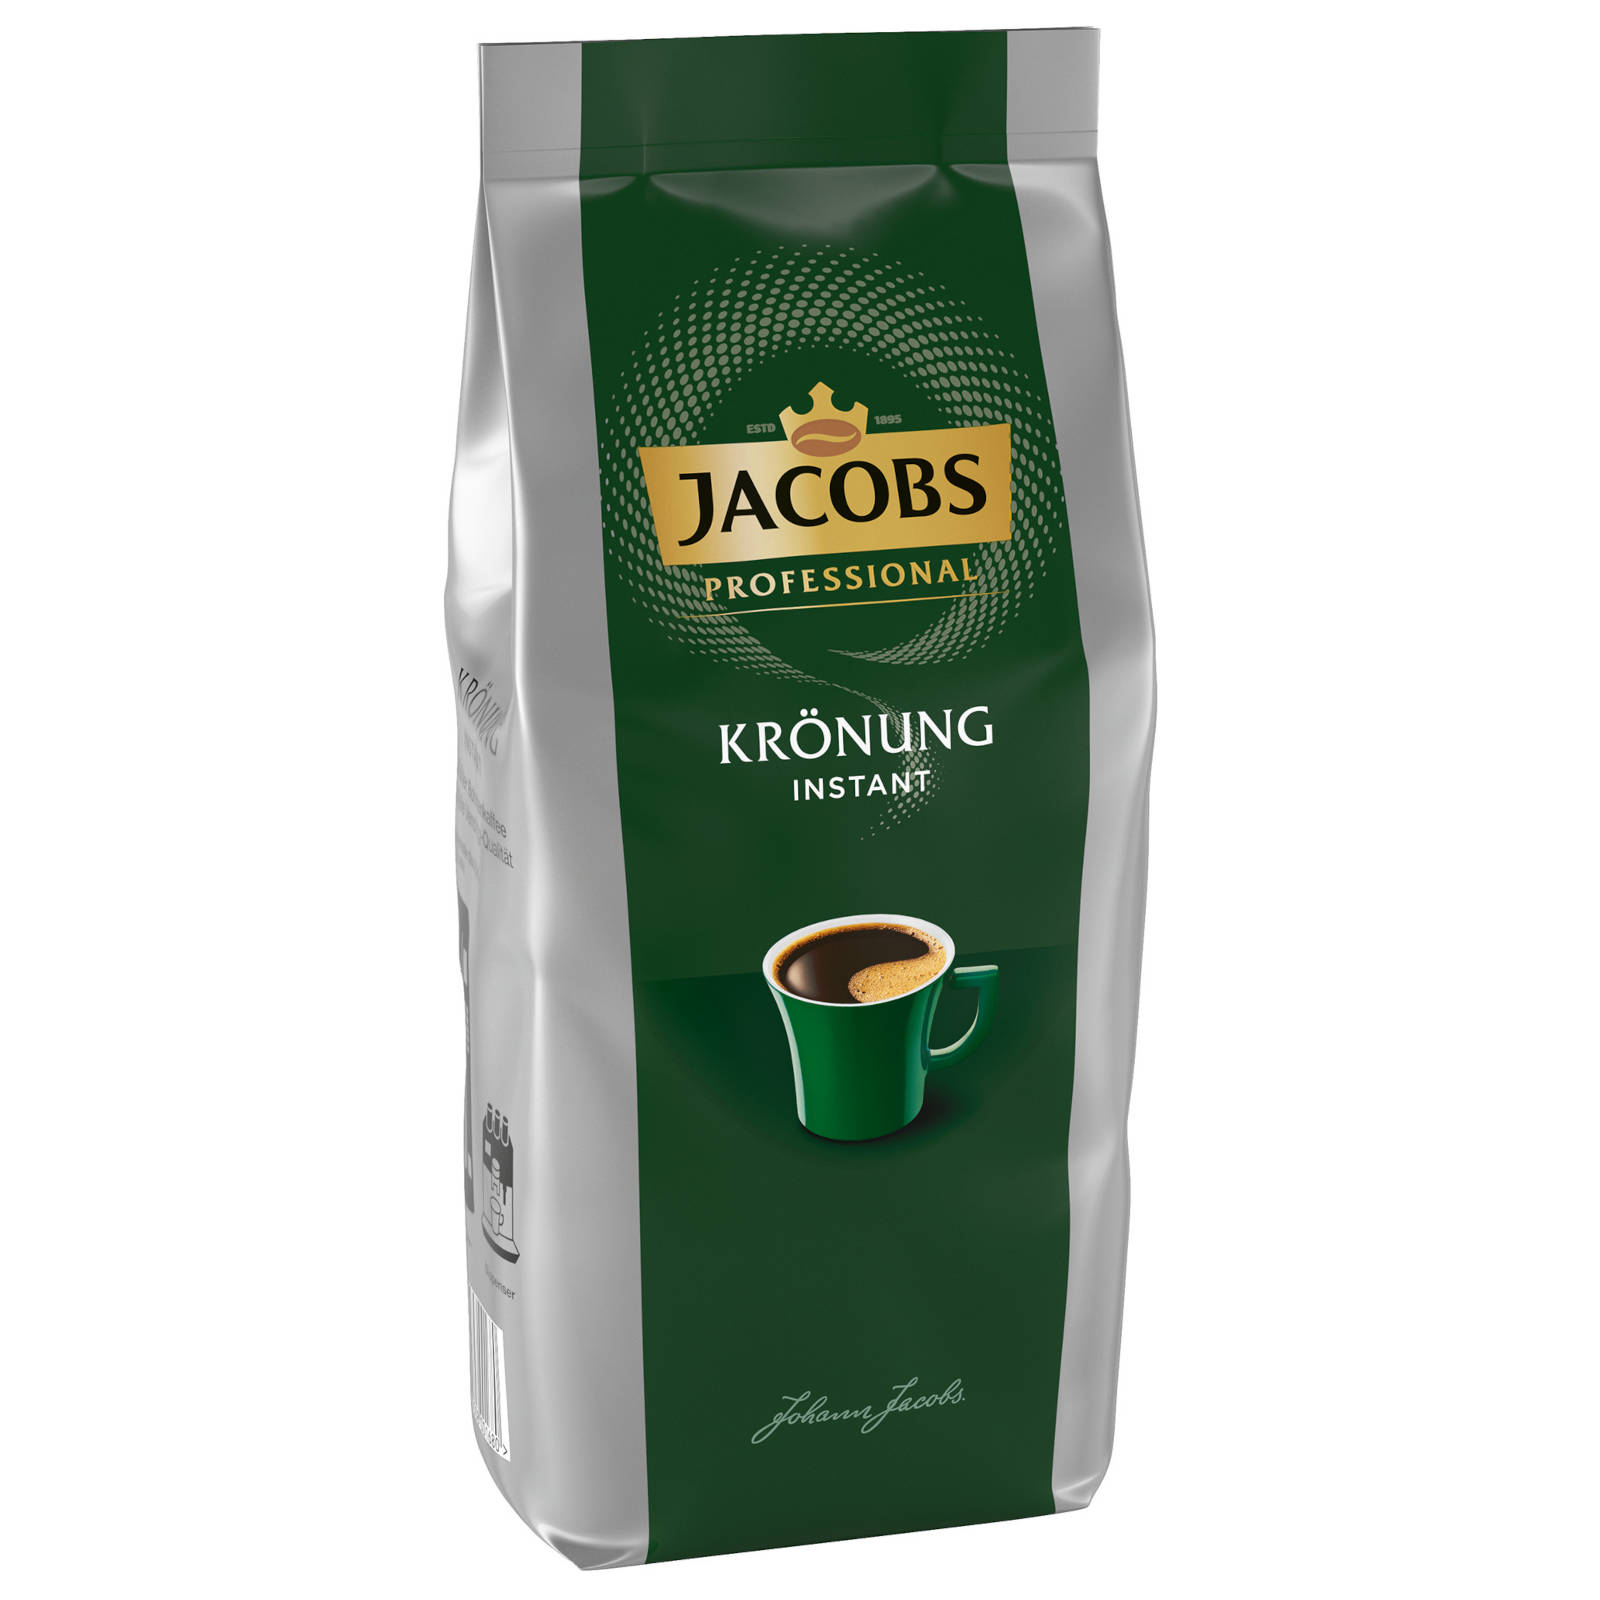 Krönung Professional Wasser heißem Instantkaffee 8x500 auflösen, g Heißgetränkeautomaten) JACOBS (In